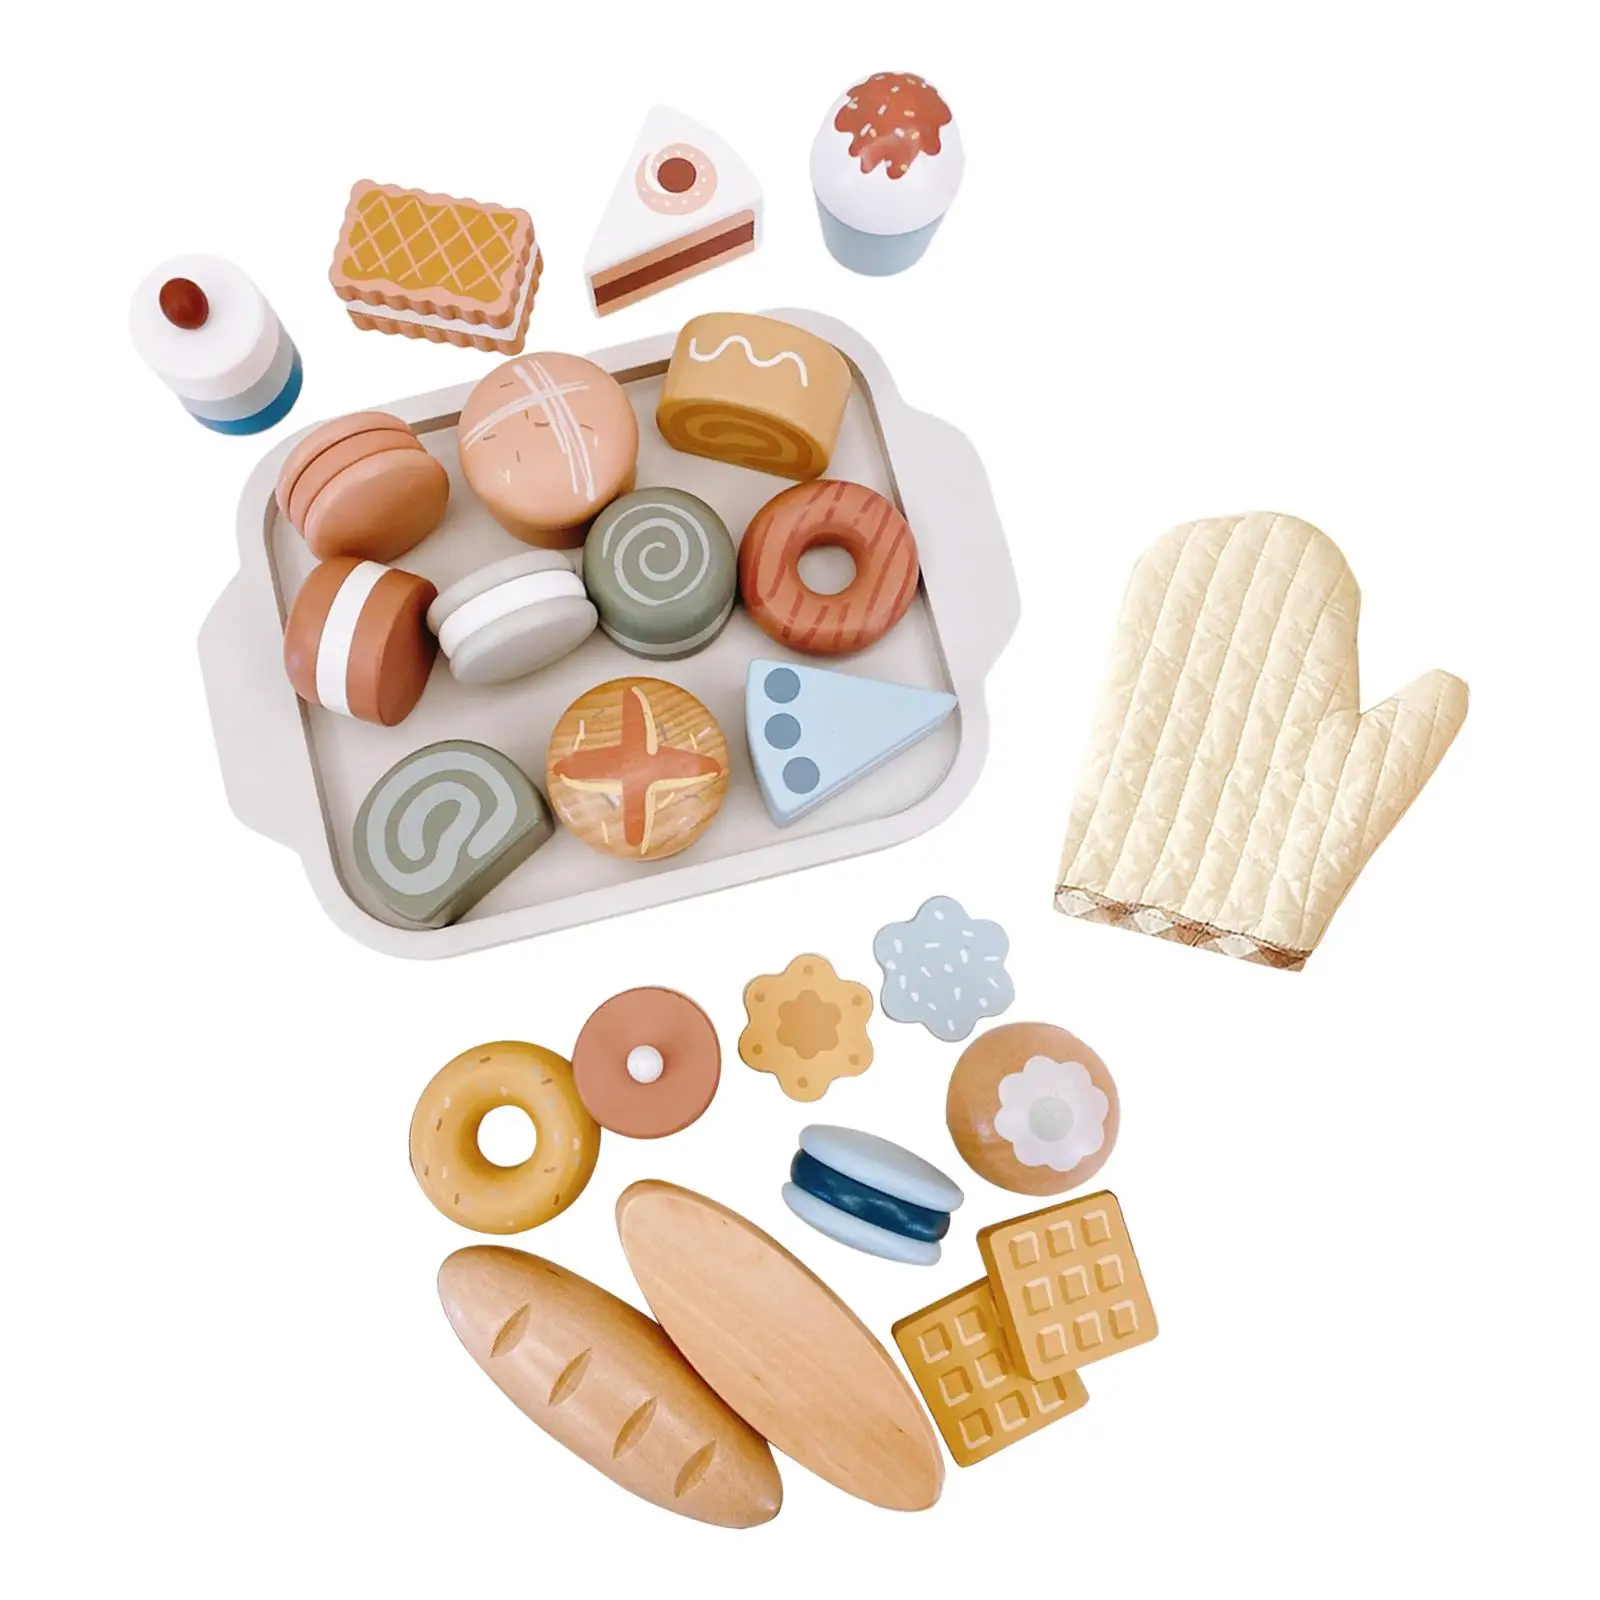 

Игрушечные продукты с играми, печенье, пирожные, игровой набор, обучающий Монтессори, комплект для ролевых игр, конфеты, предметы интерьера